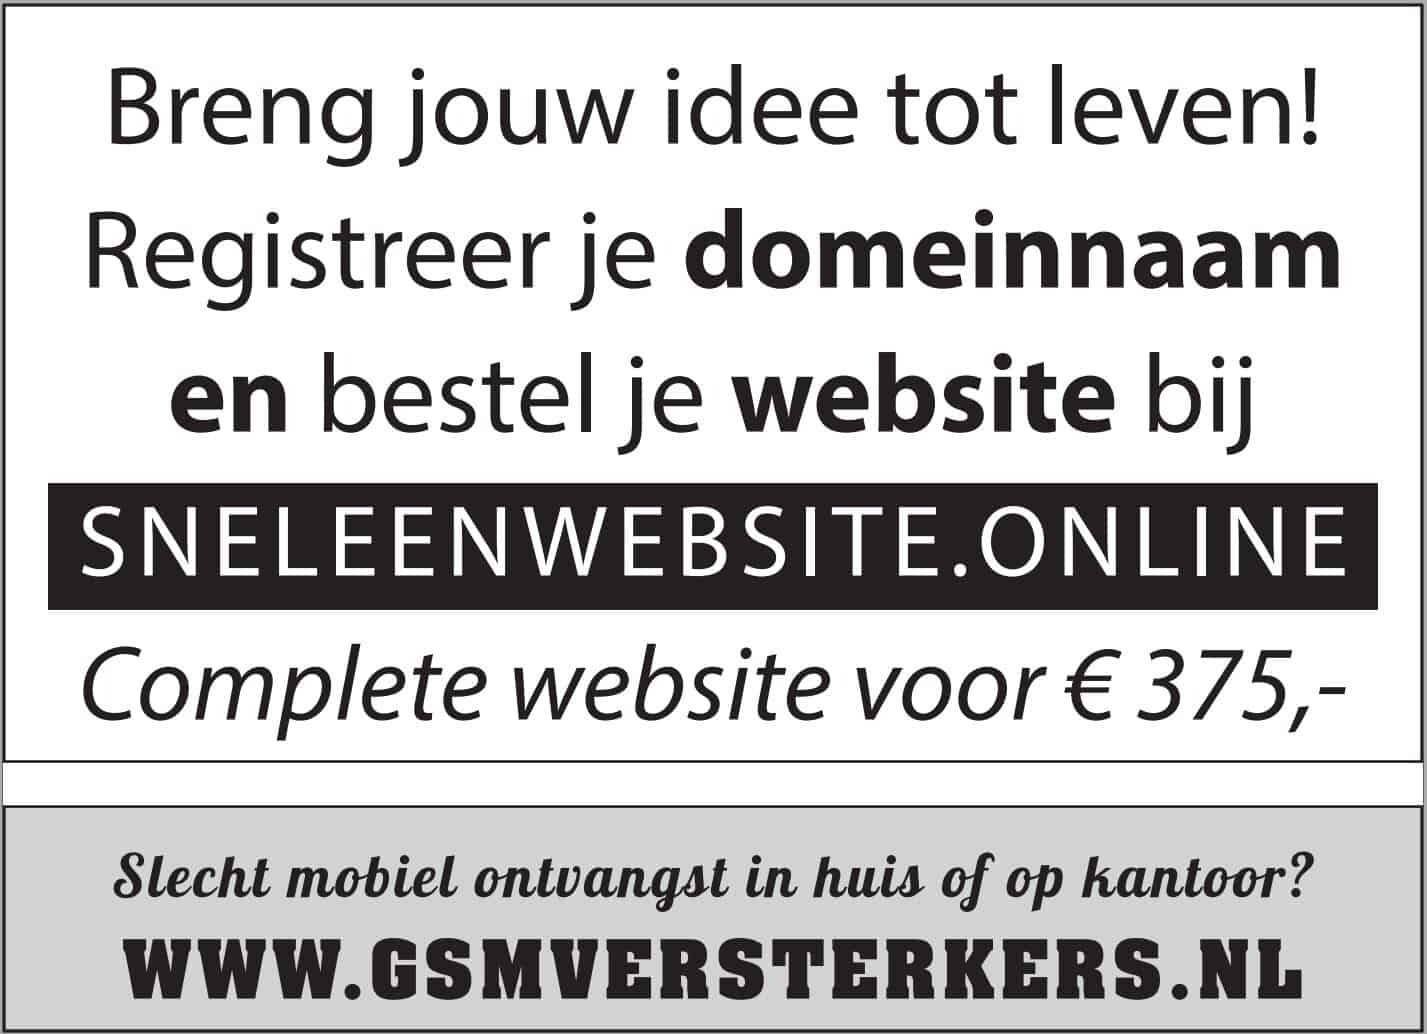 Sneleenwebsite.online